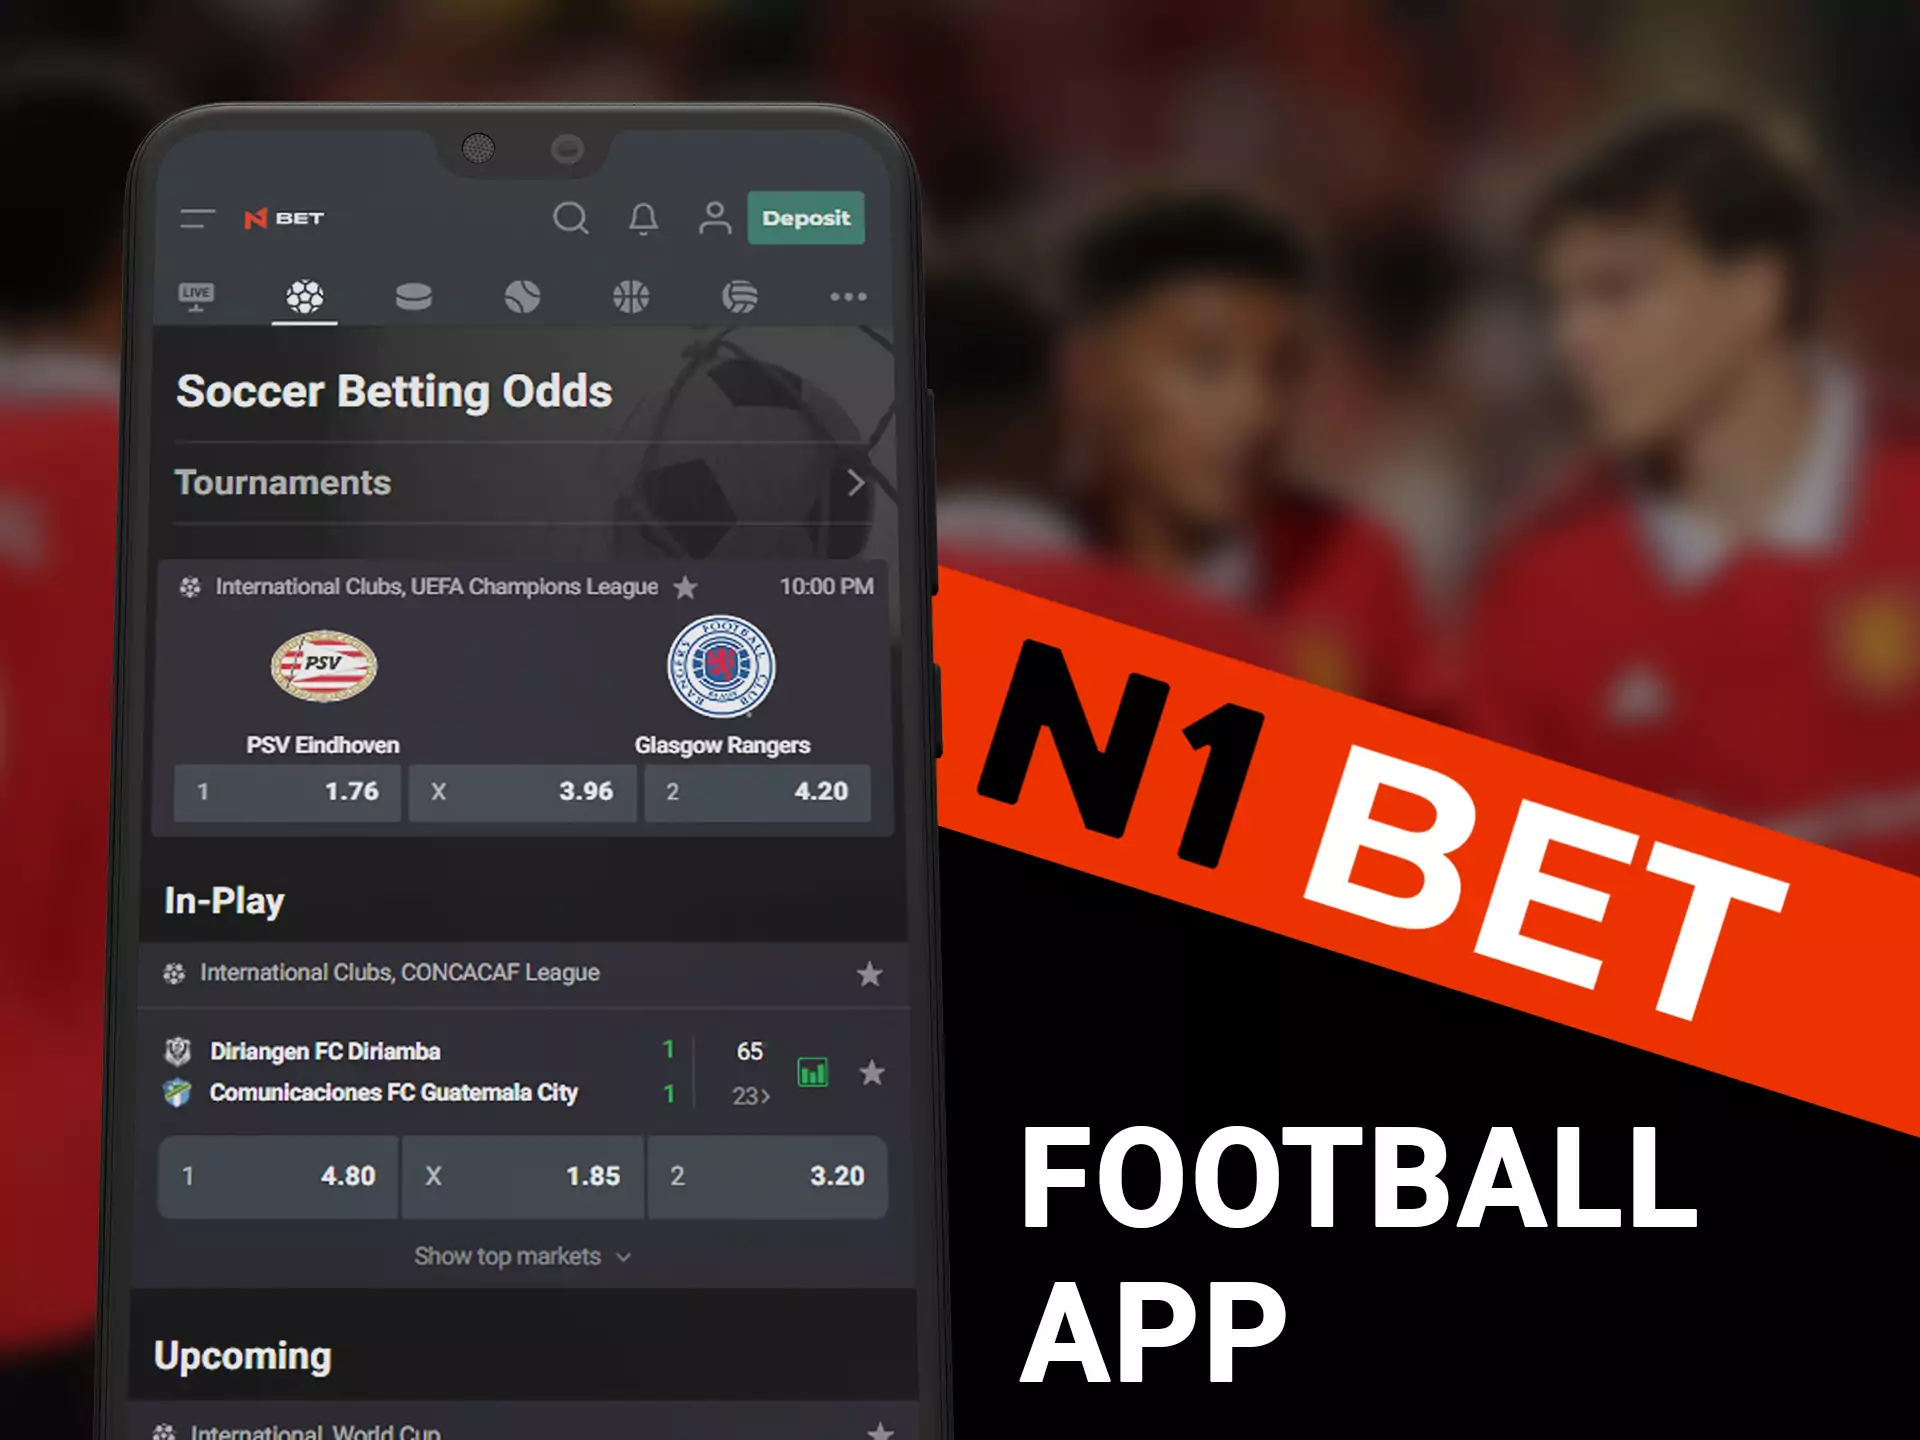 Bet on legendary soccer teams in N1Bet app.